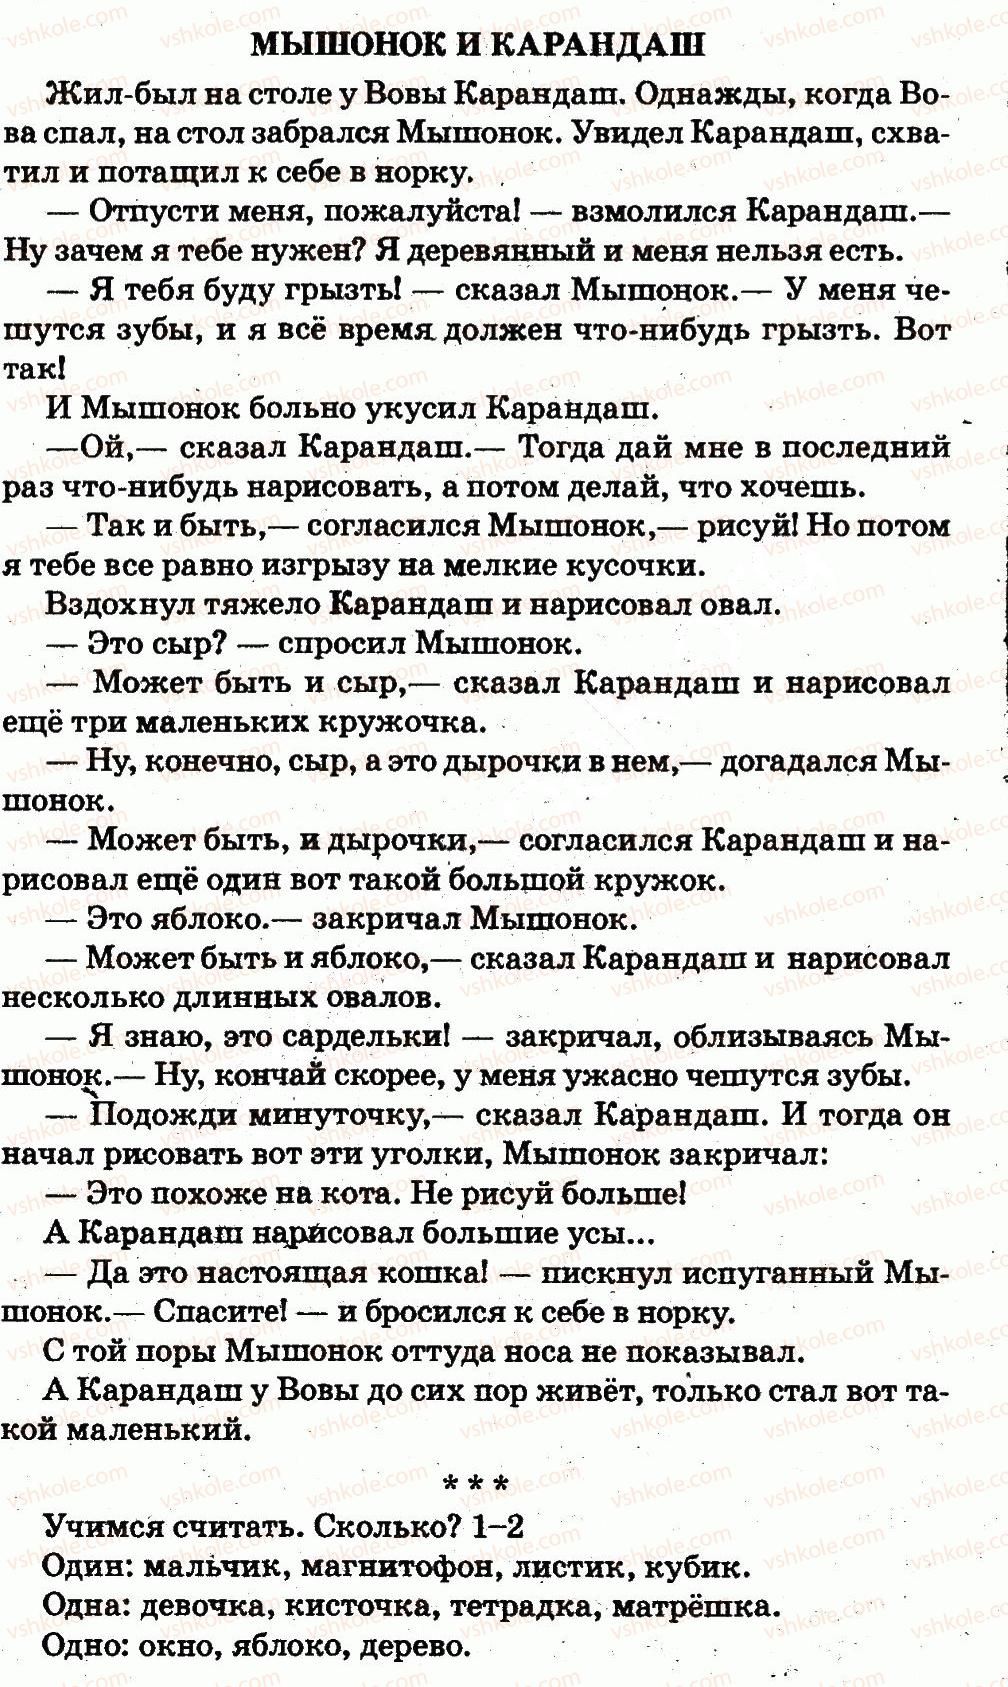 1-russkij-yazyk-in-lapshina-nn-zorka-2012--zdravstvuj-shkola-страница26.jpg